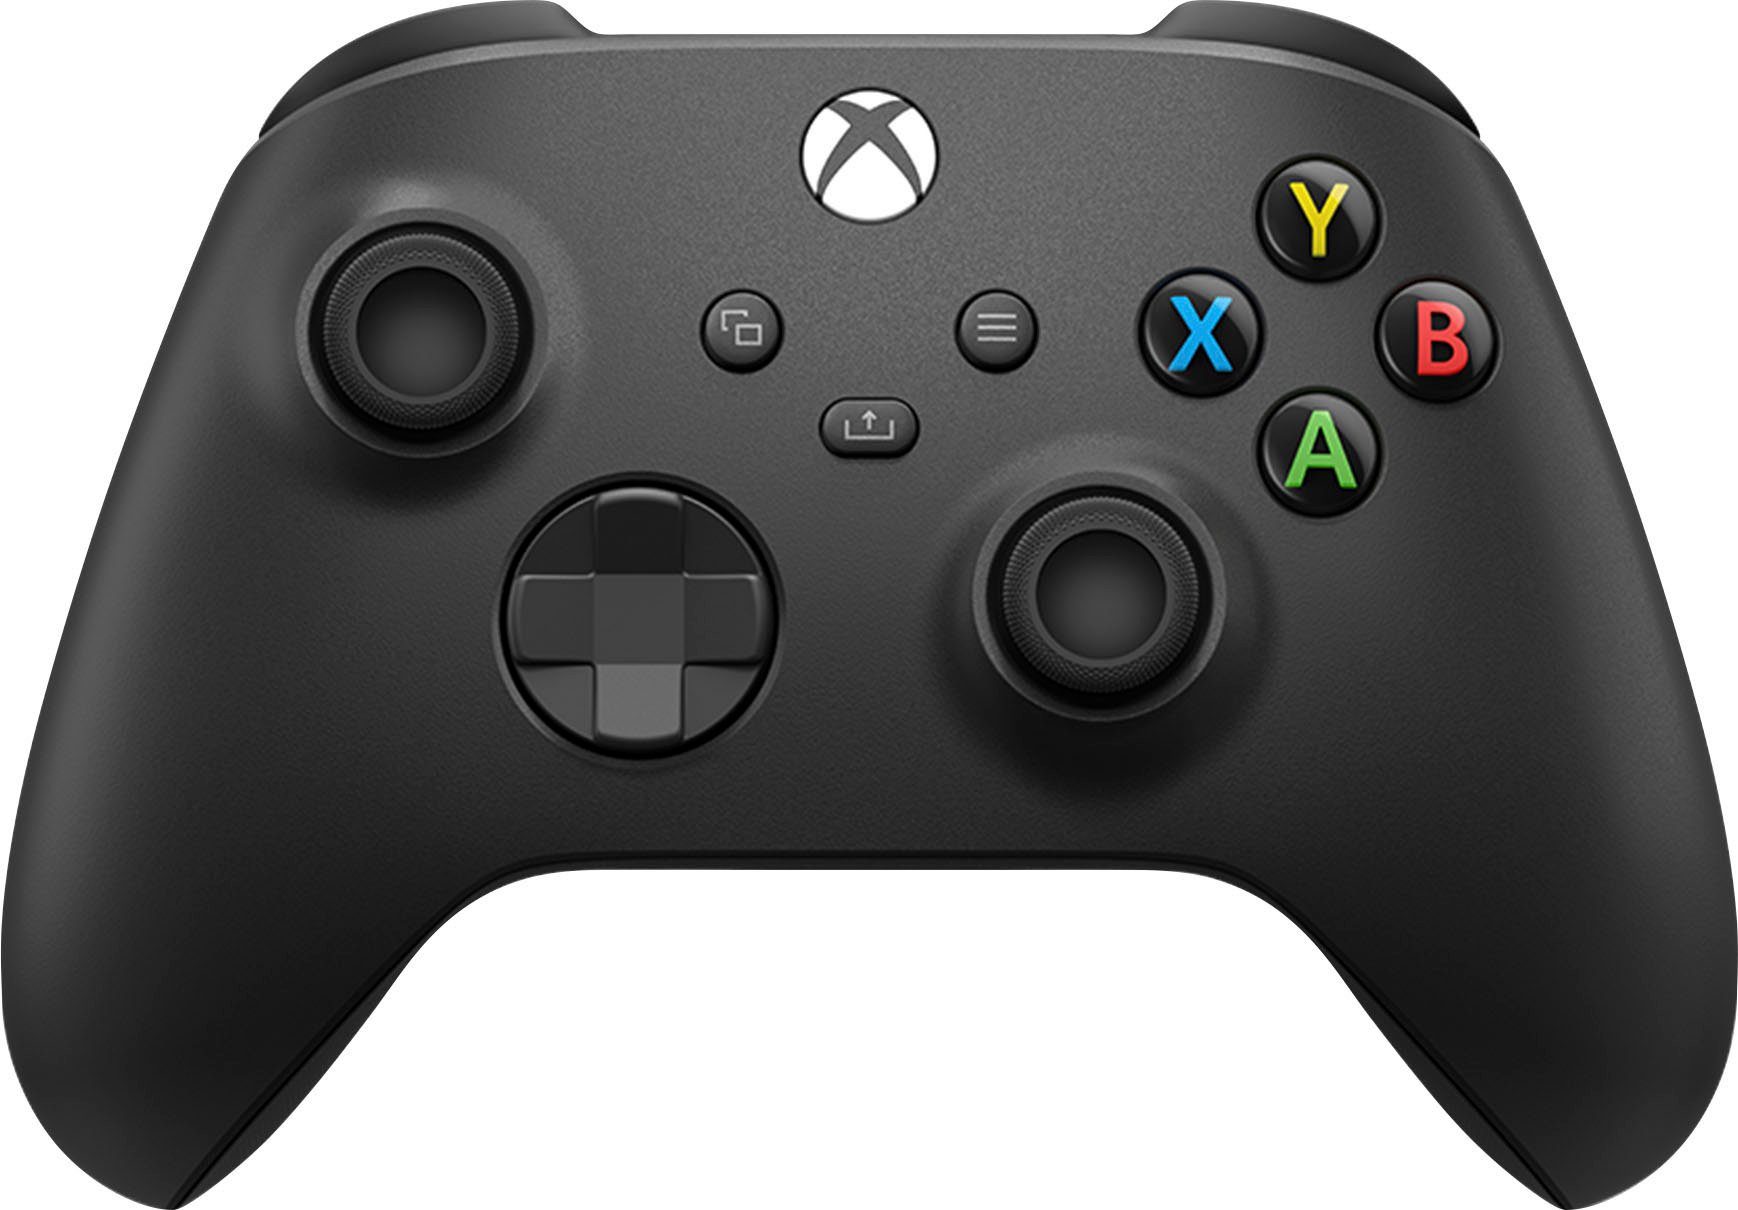 Forza 5 Horizon Bundle – Xbox Edition Premium X Series